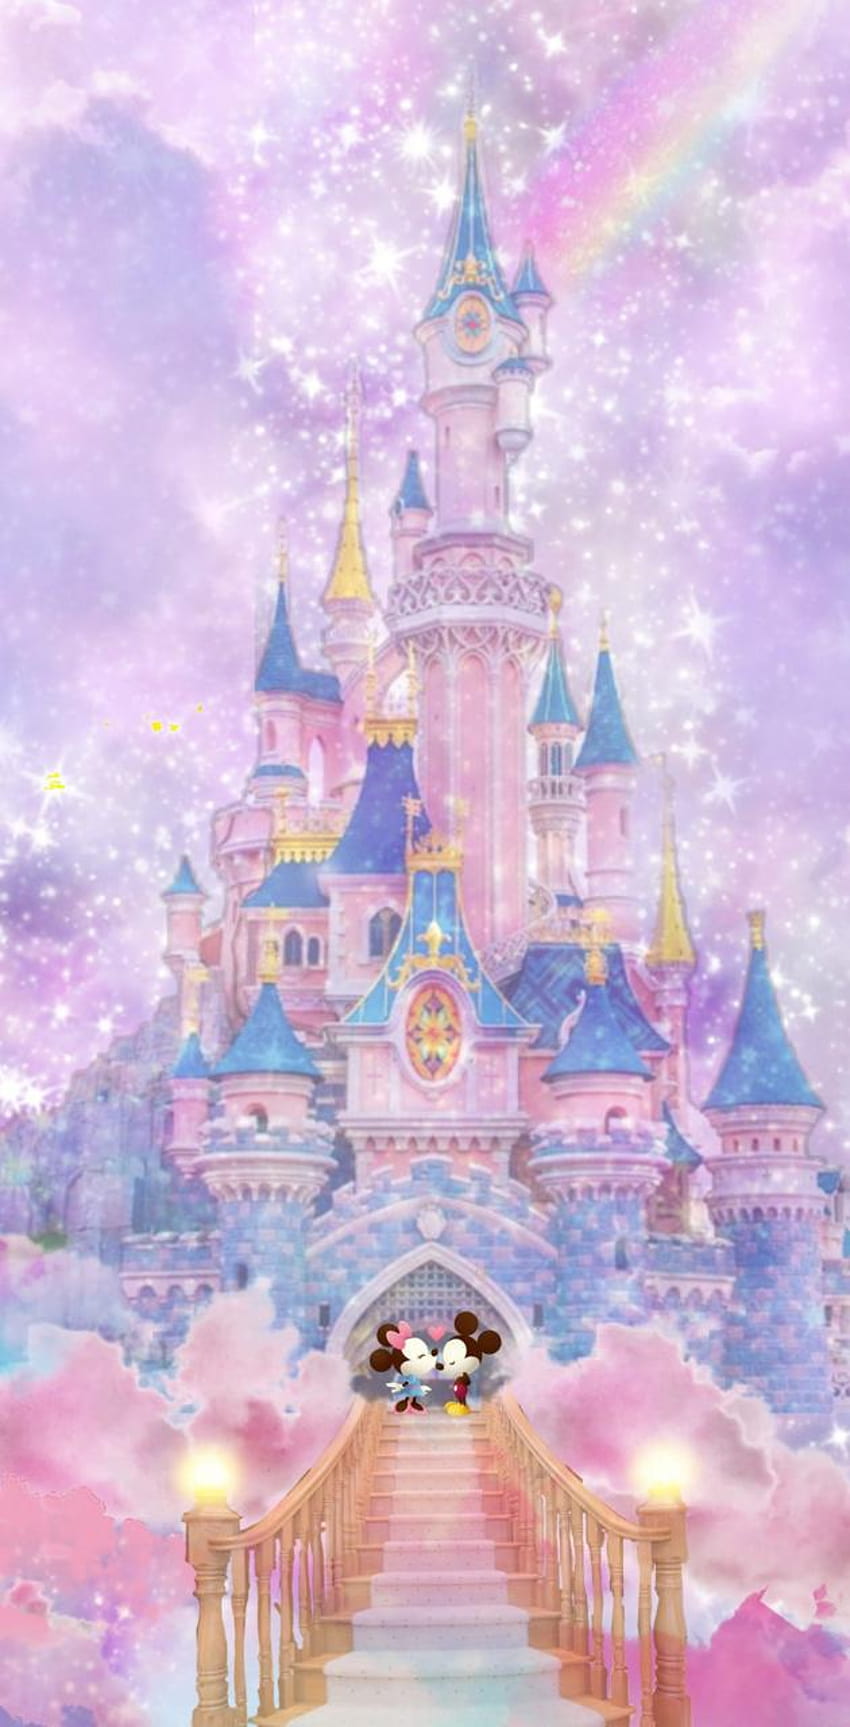 Disney castle by DisneyClarke, disney castle iphone HD phone wallpaper